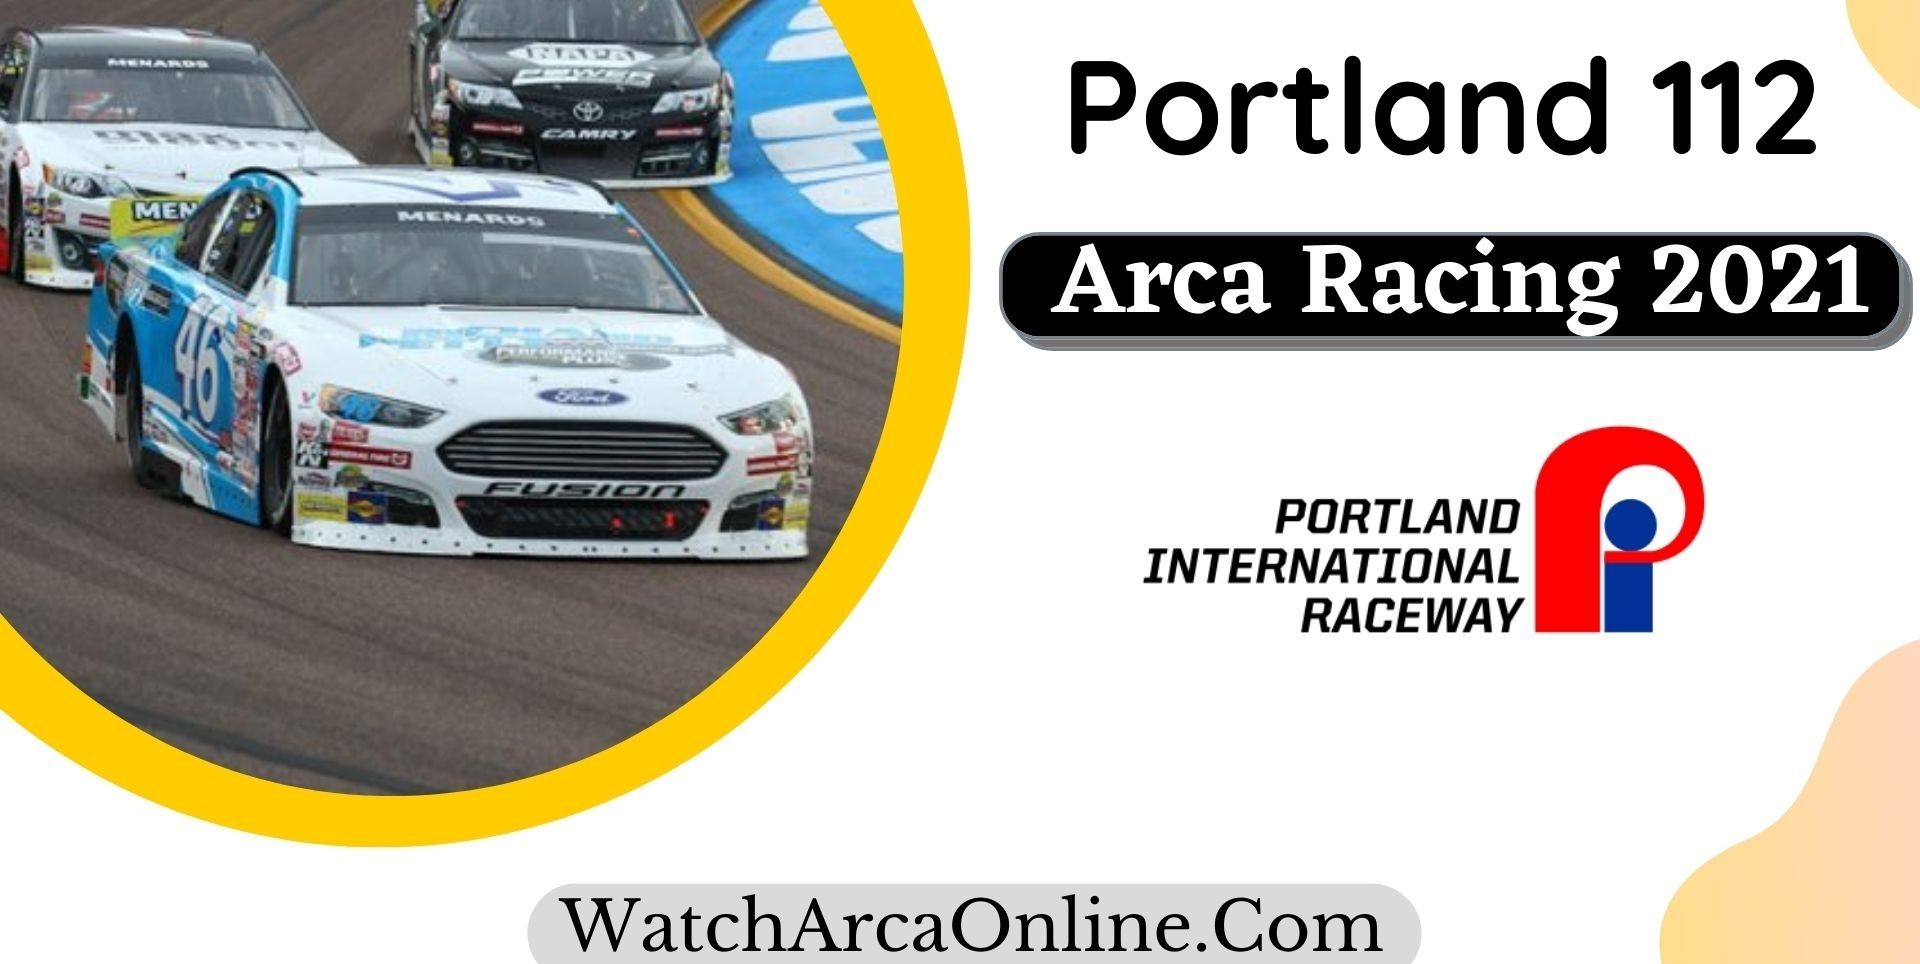 ARCA Menards Series West Portland 112 Live Stream